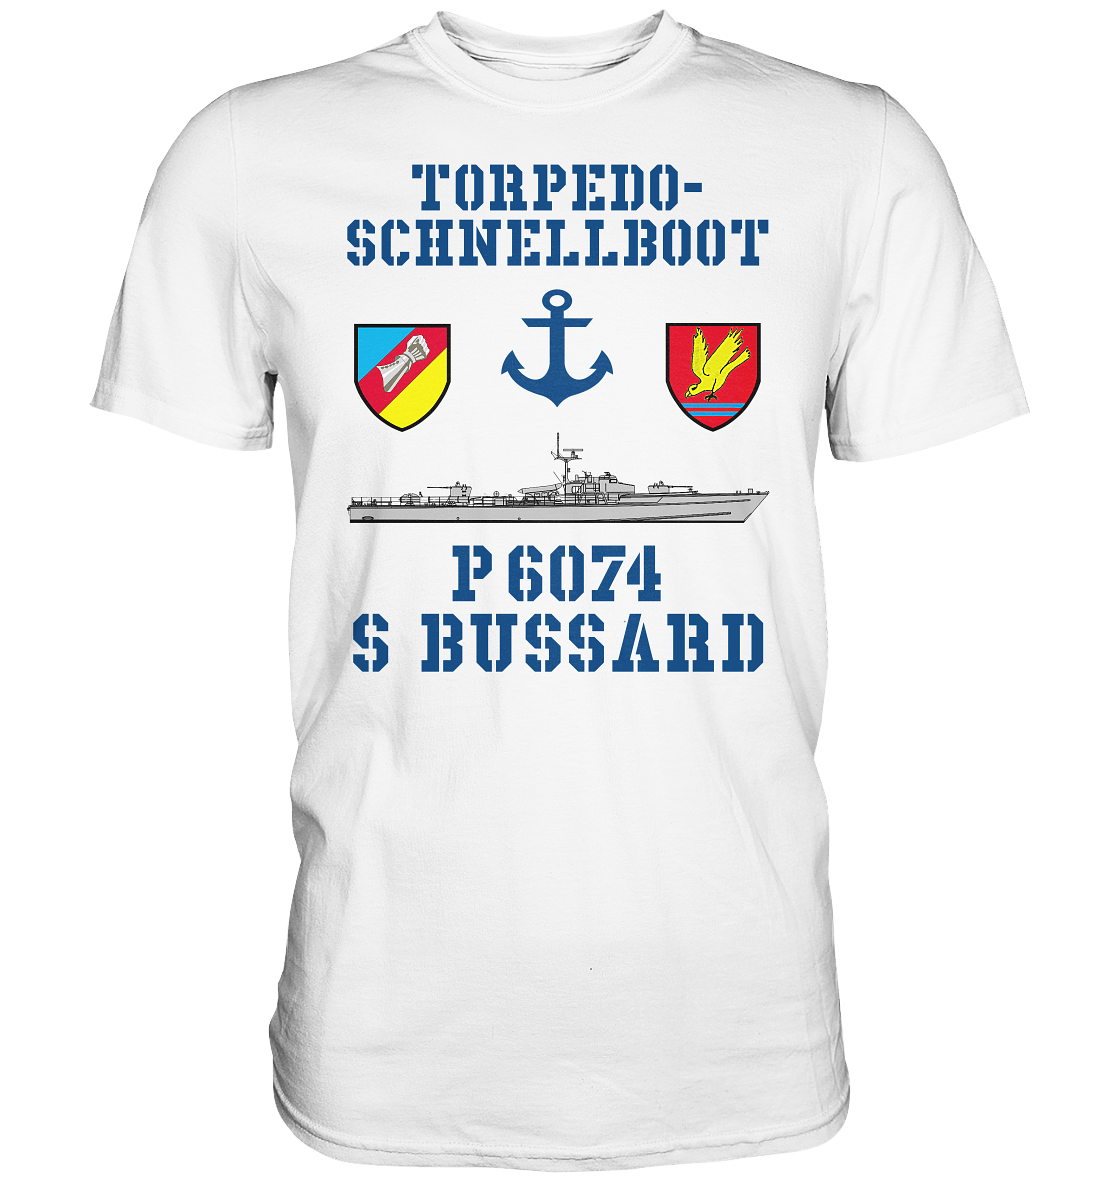 Torpedo-Schnellboot P6074 BUSSARD Anker - Premium Shirt